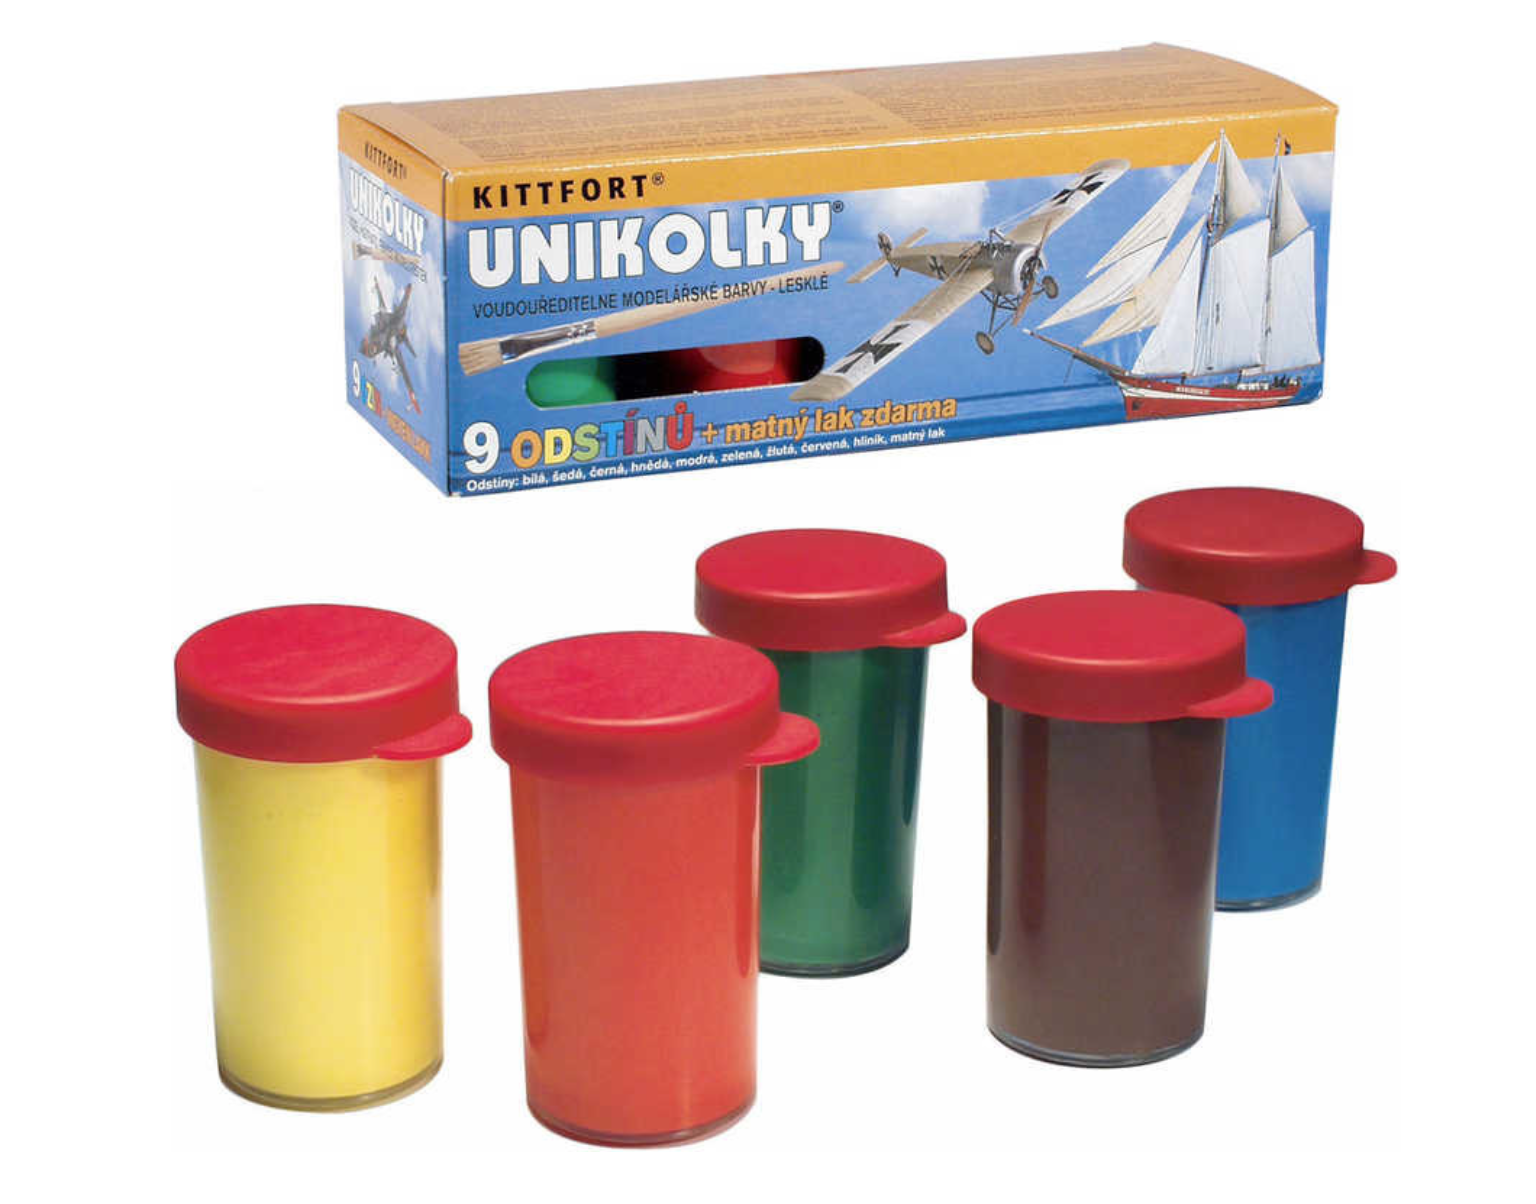 Kittfort Unikolky modelářské barvy 9 barev + matný lak